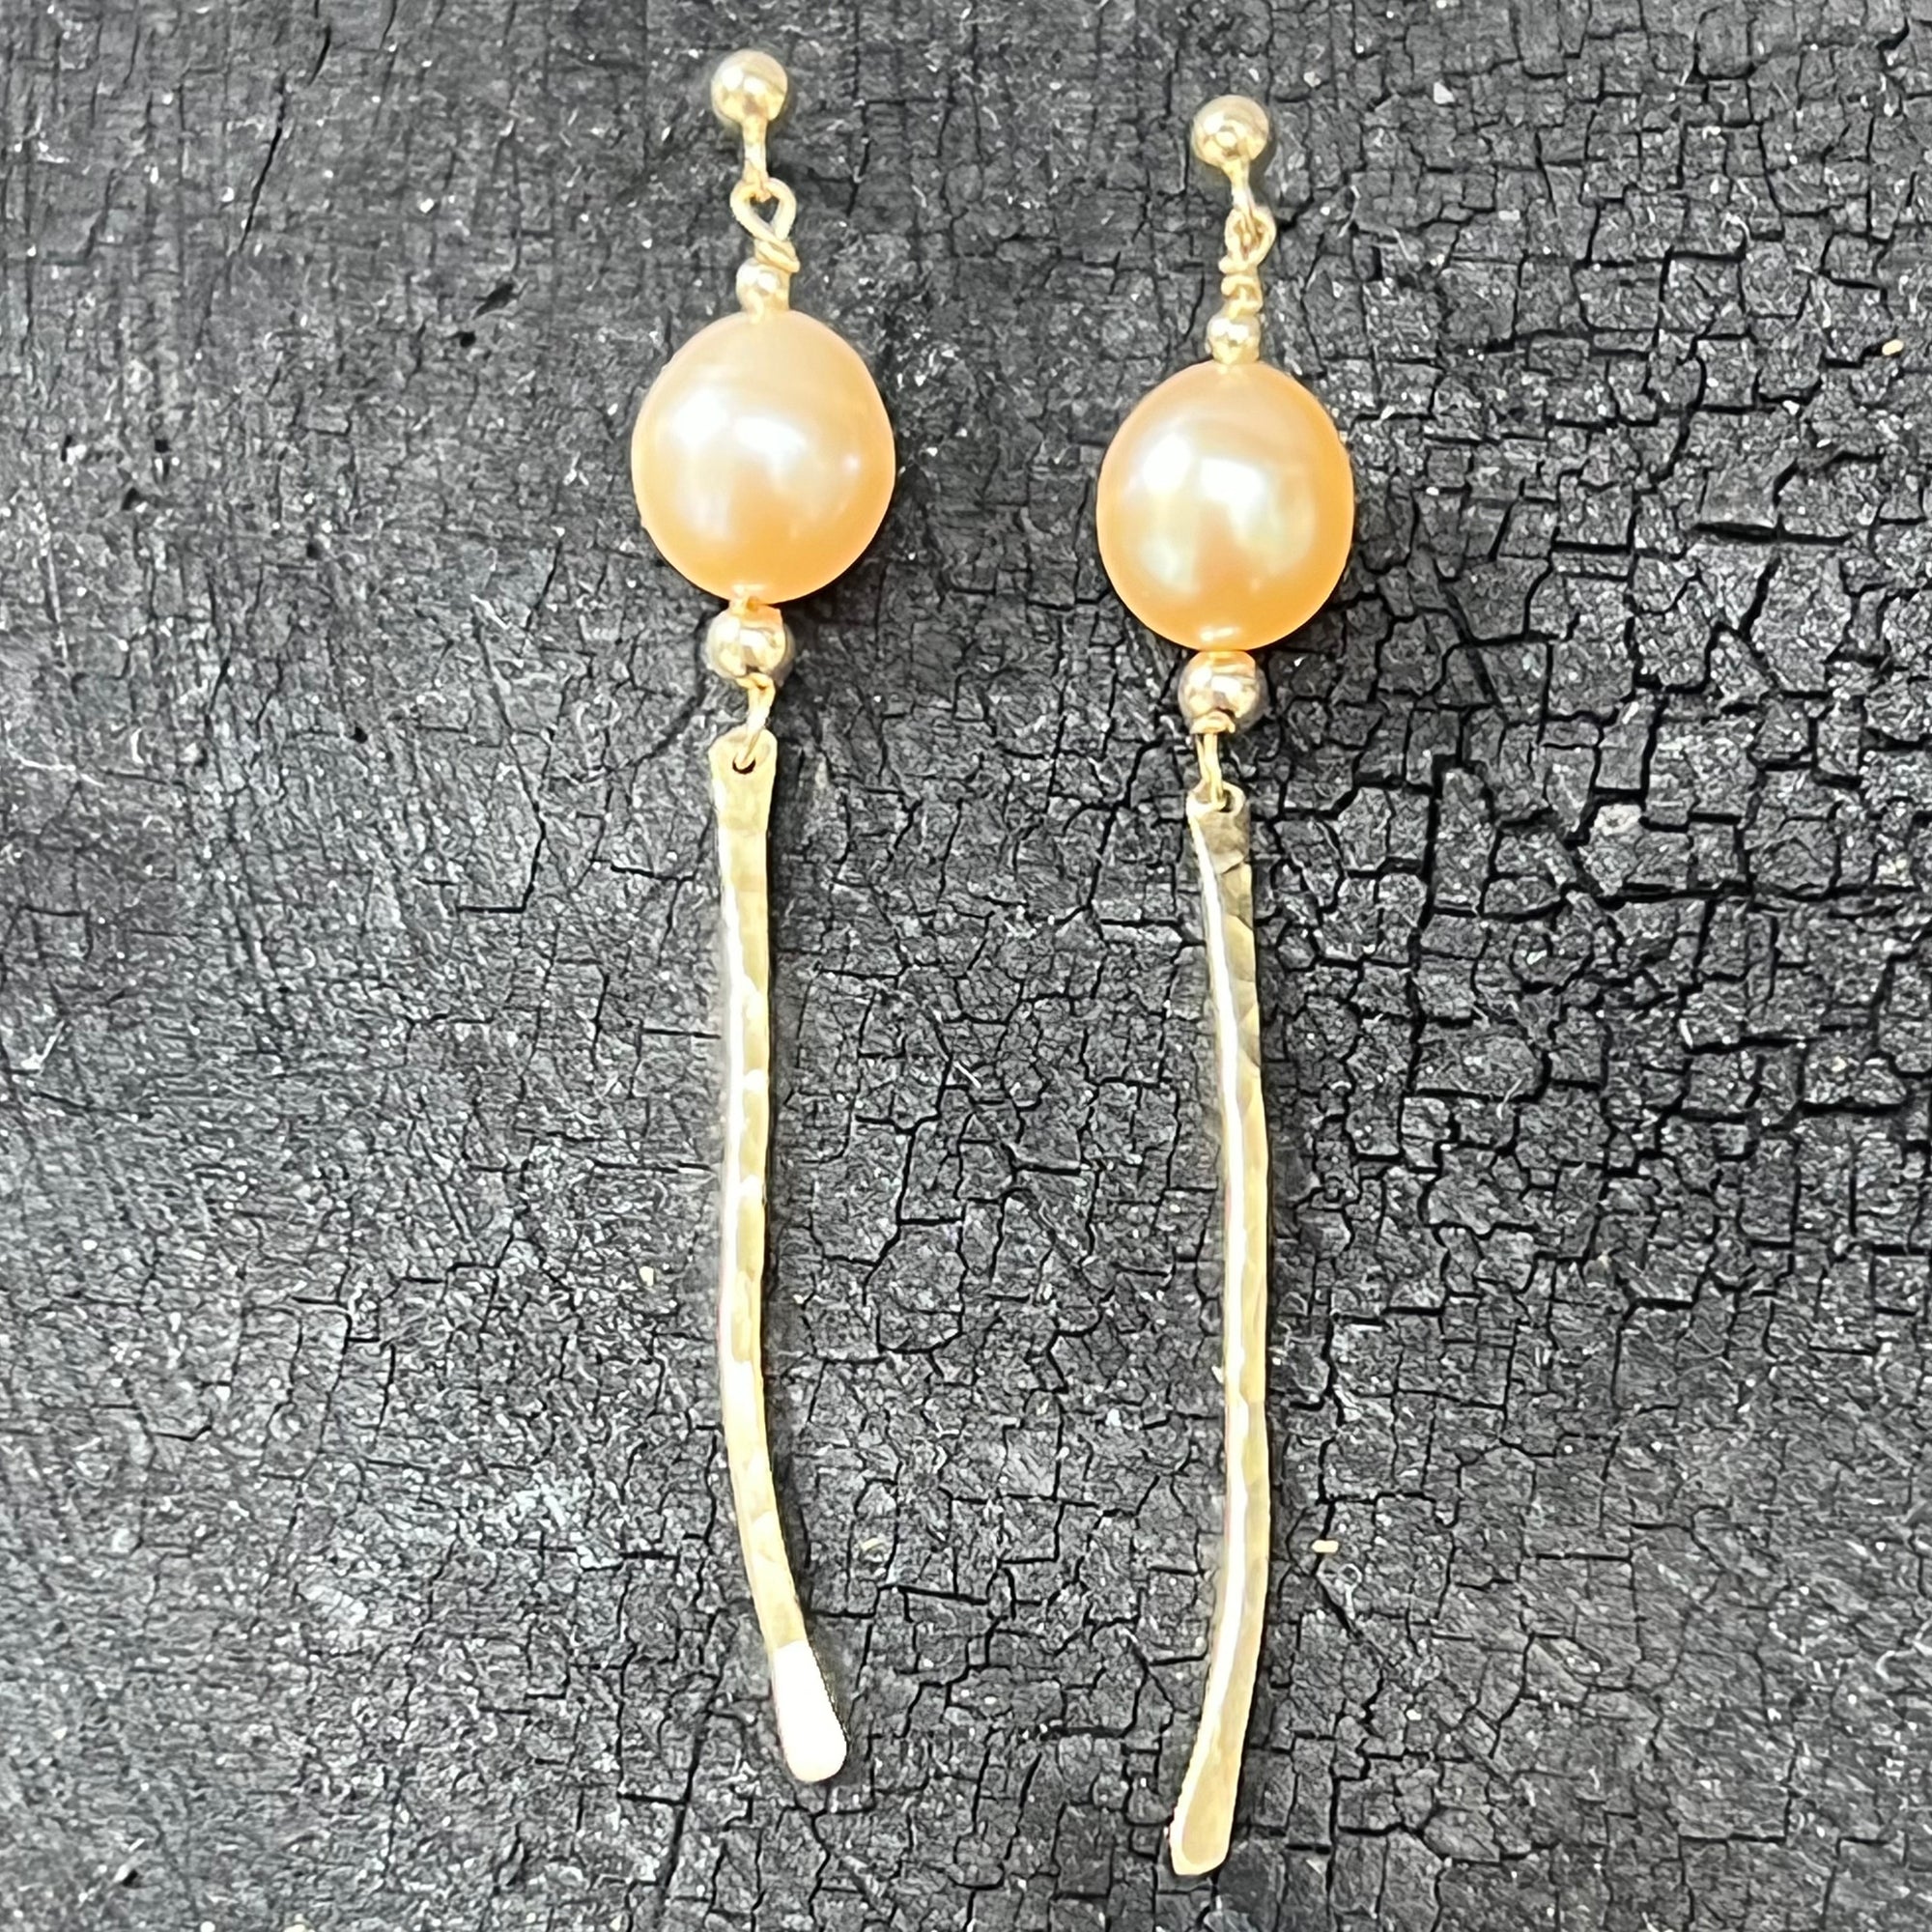 Peach Pearls 14K Gold earrings handmade by Garden of Silver in Westhampton Beach, NY www.gardenofsilver.com